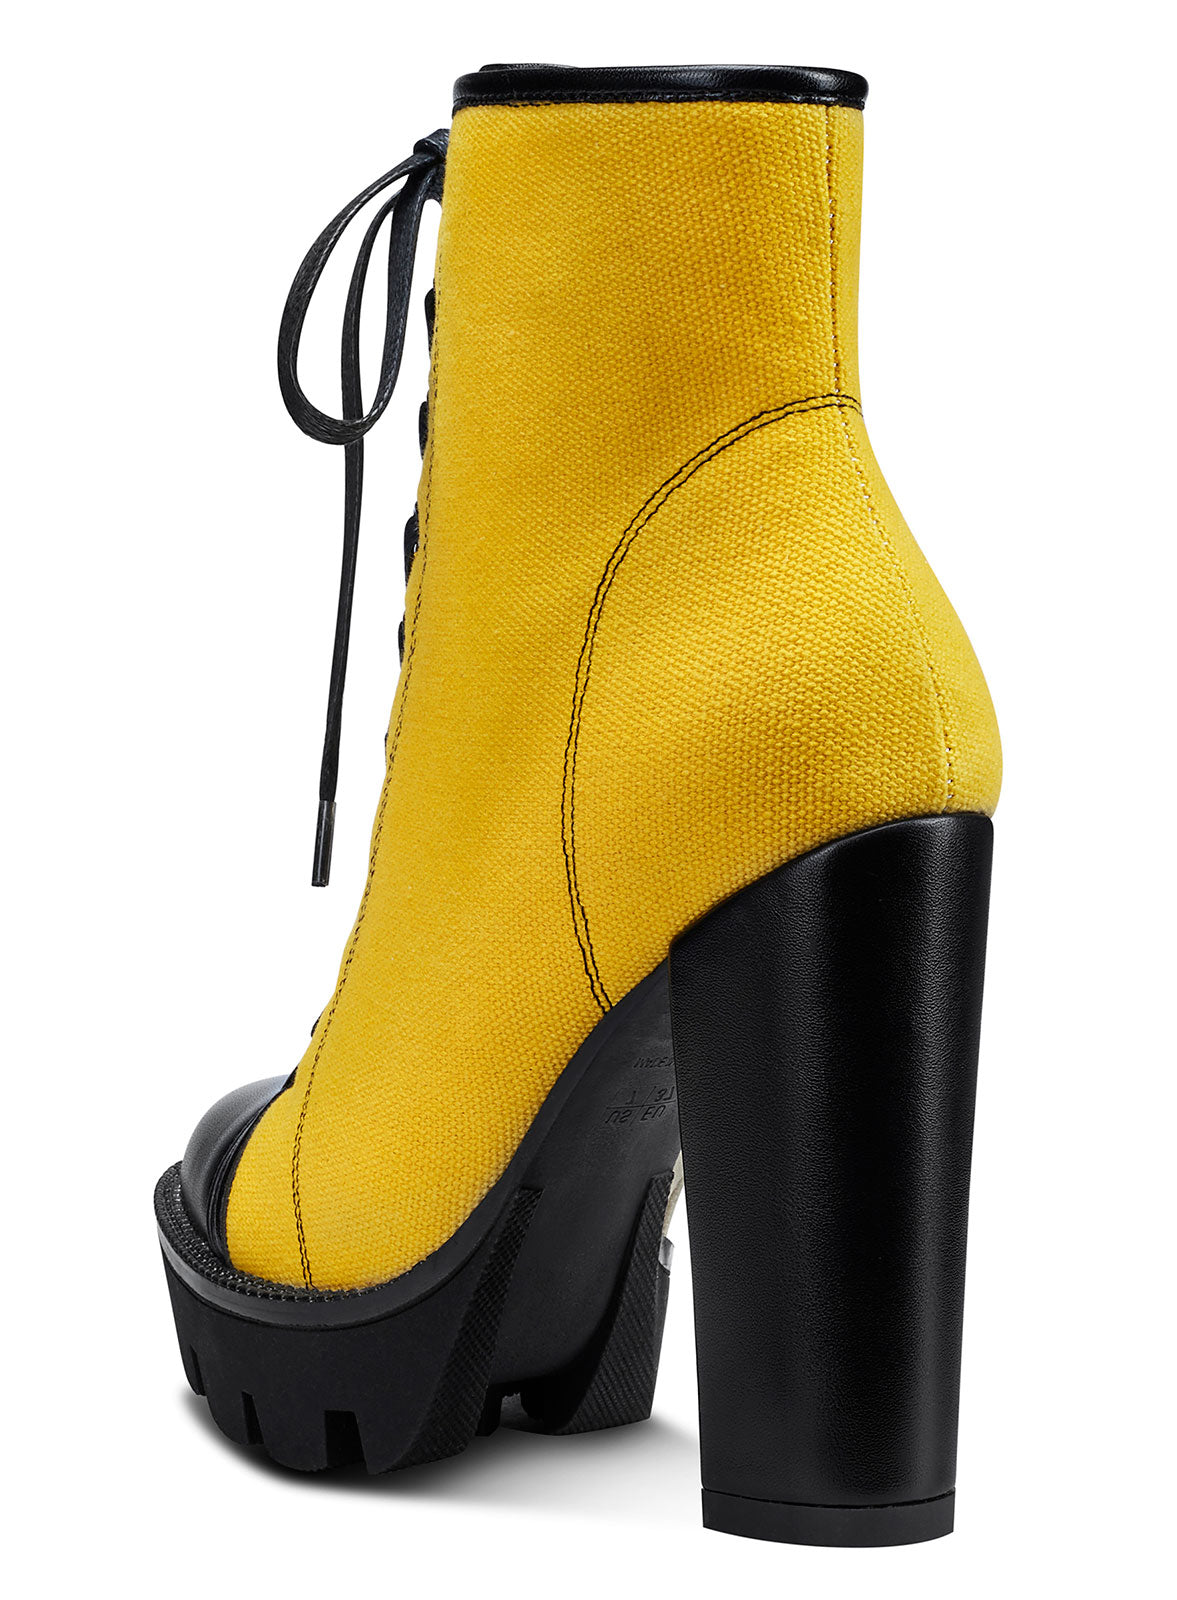 Allegra K Women's Platform Block Heel Over Knee High Boots Yellow 6 : Target